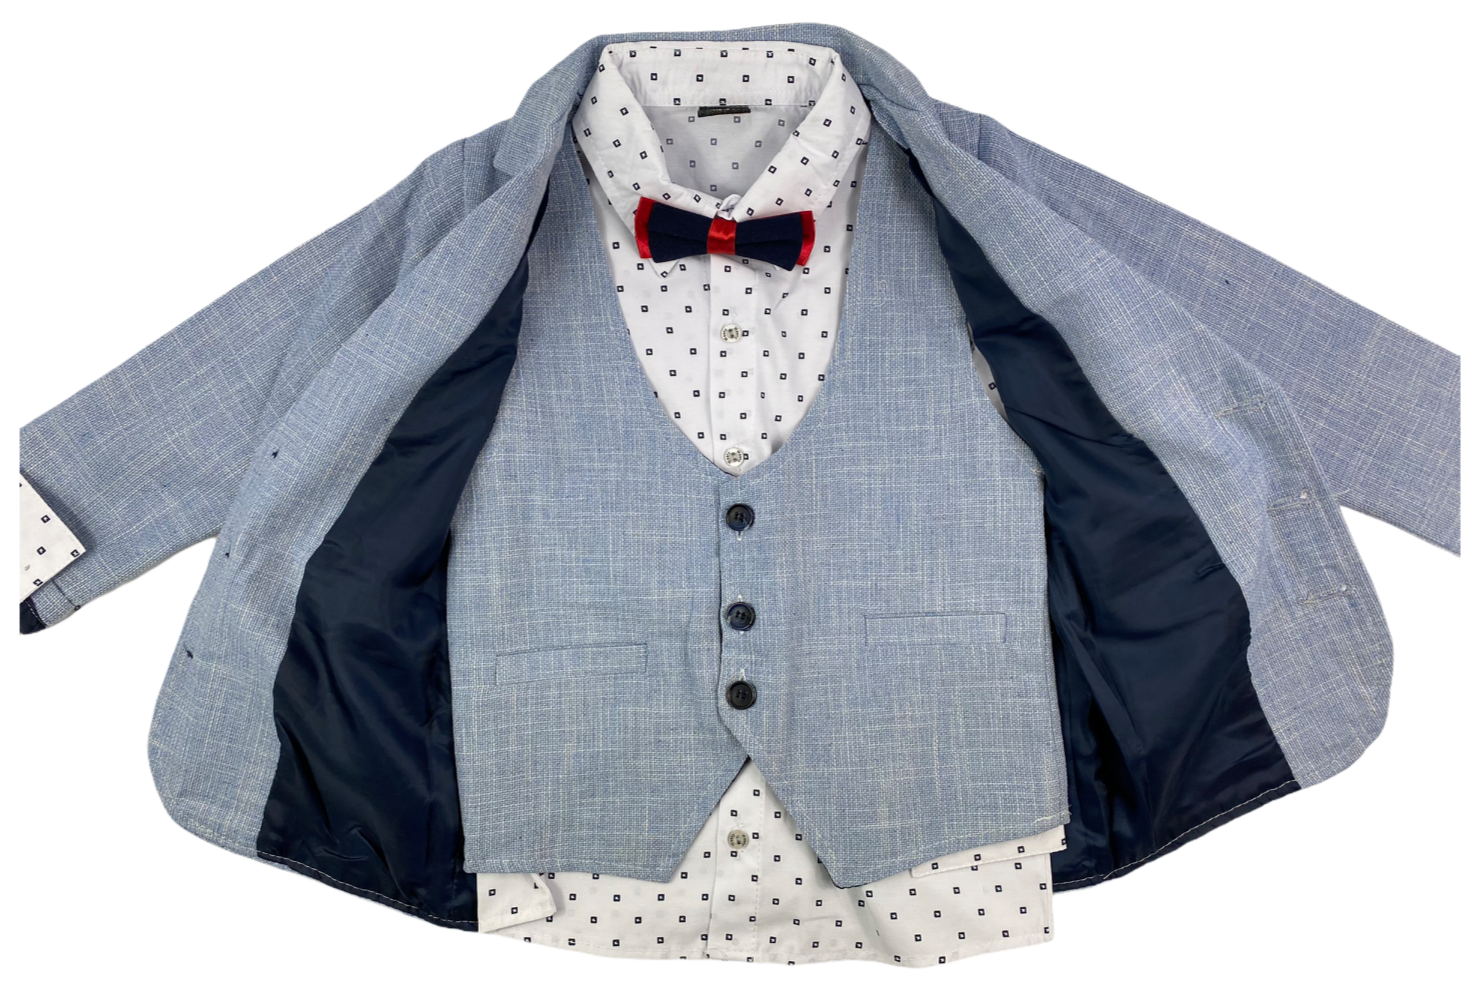 Aboutkidz in Hose, Fliege Hemd, Sakko, festliche – Anzug Weste & Mode hellblau/dun